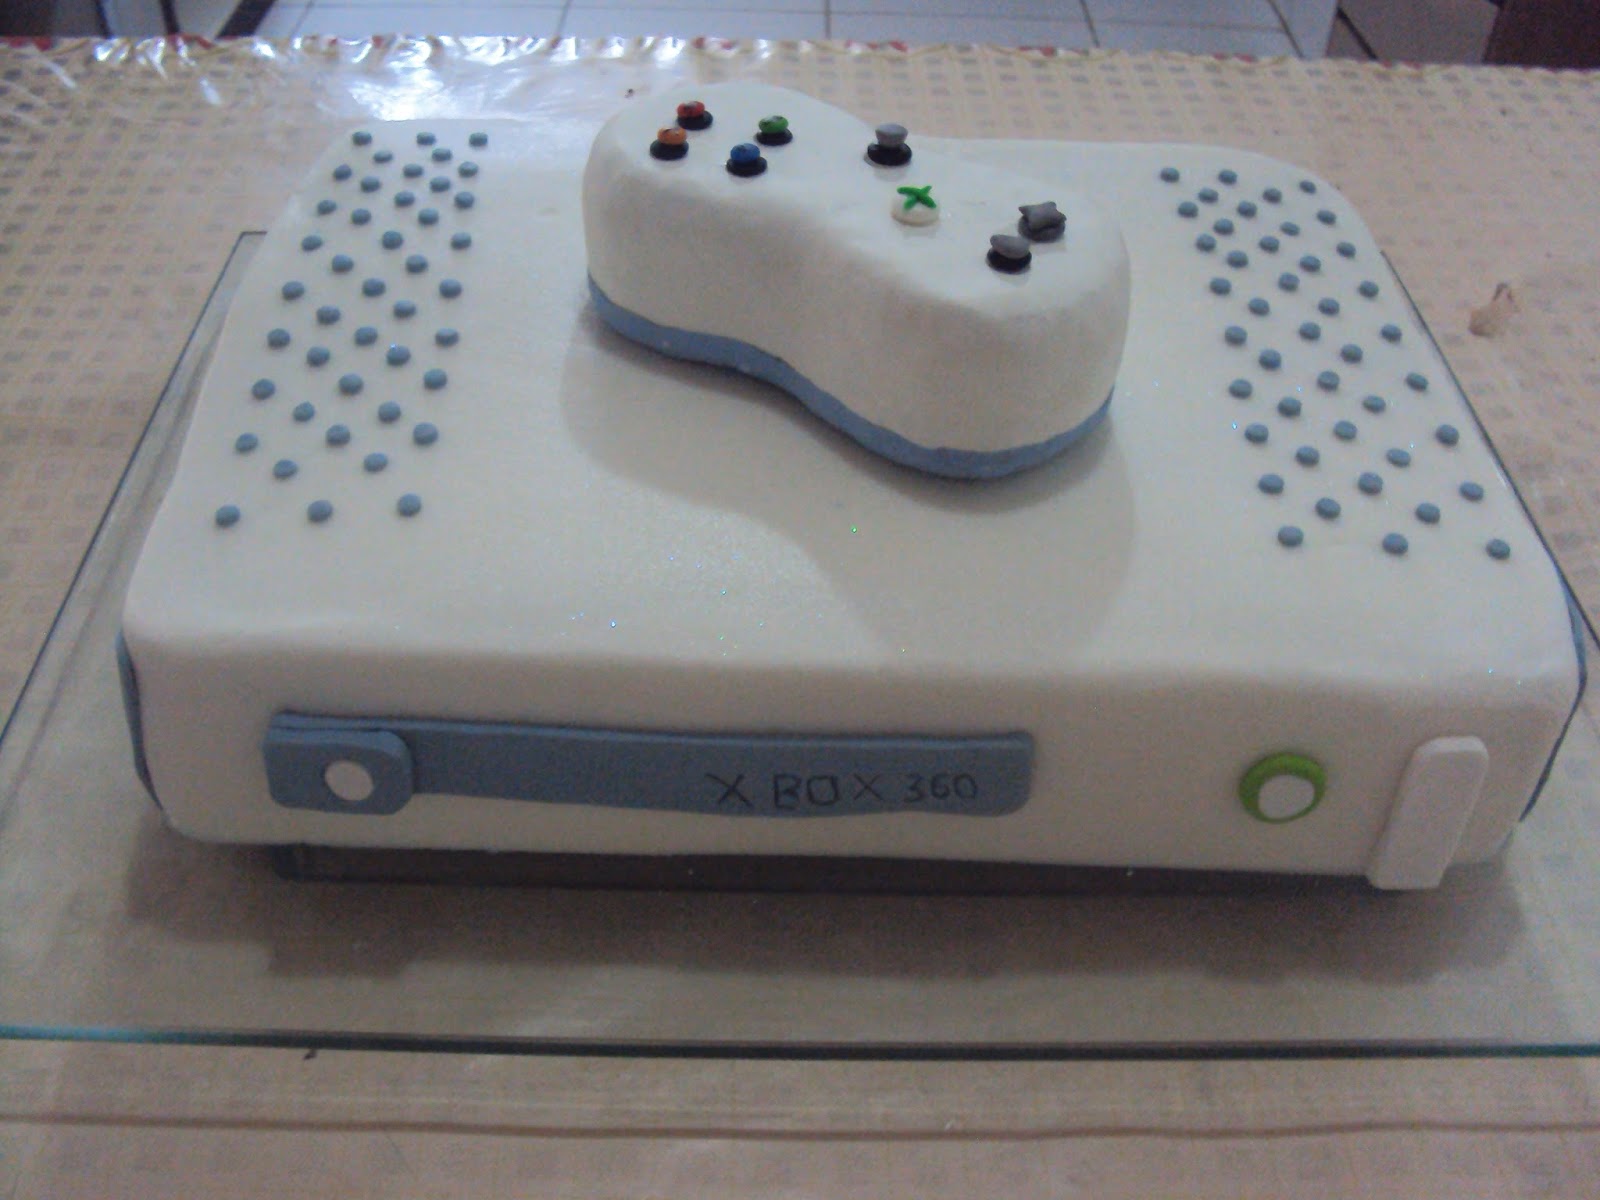 XboxBR on X: Aniversariantes do dia: 🎂 - 15 anos de Xbox 360